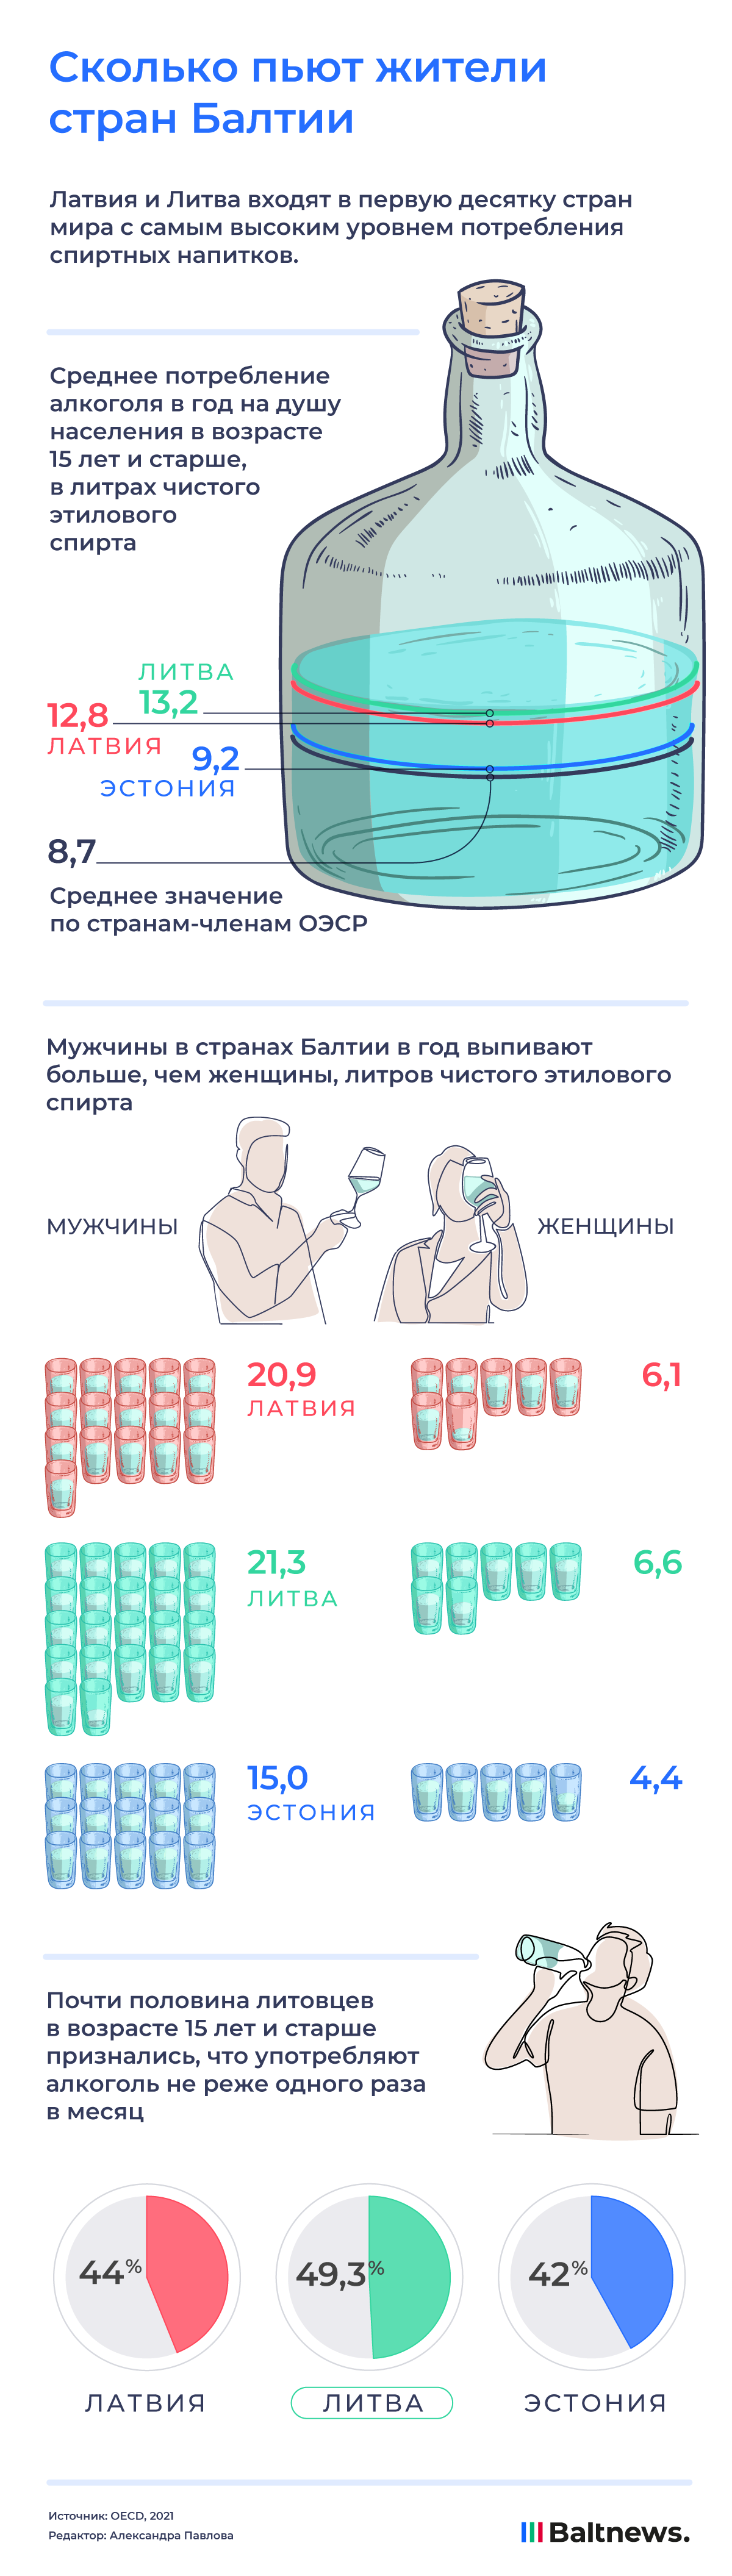 Сколько пьют жители стран Балтии